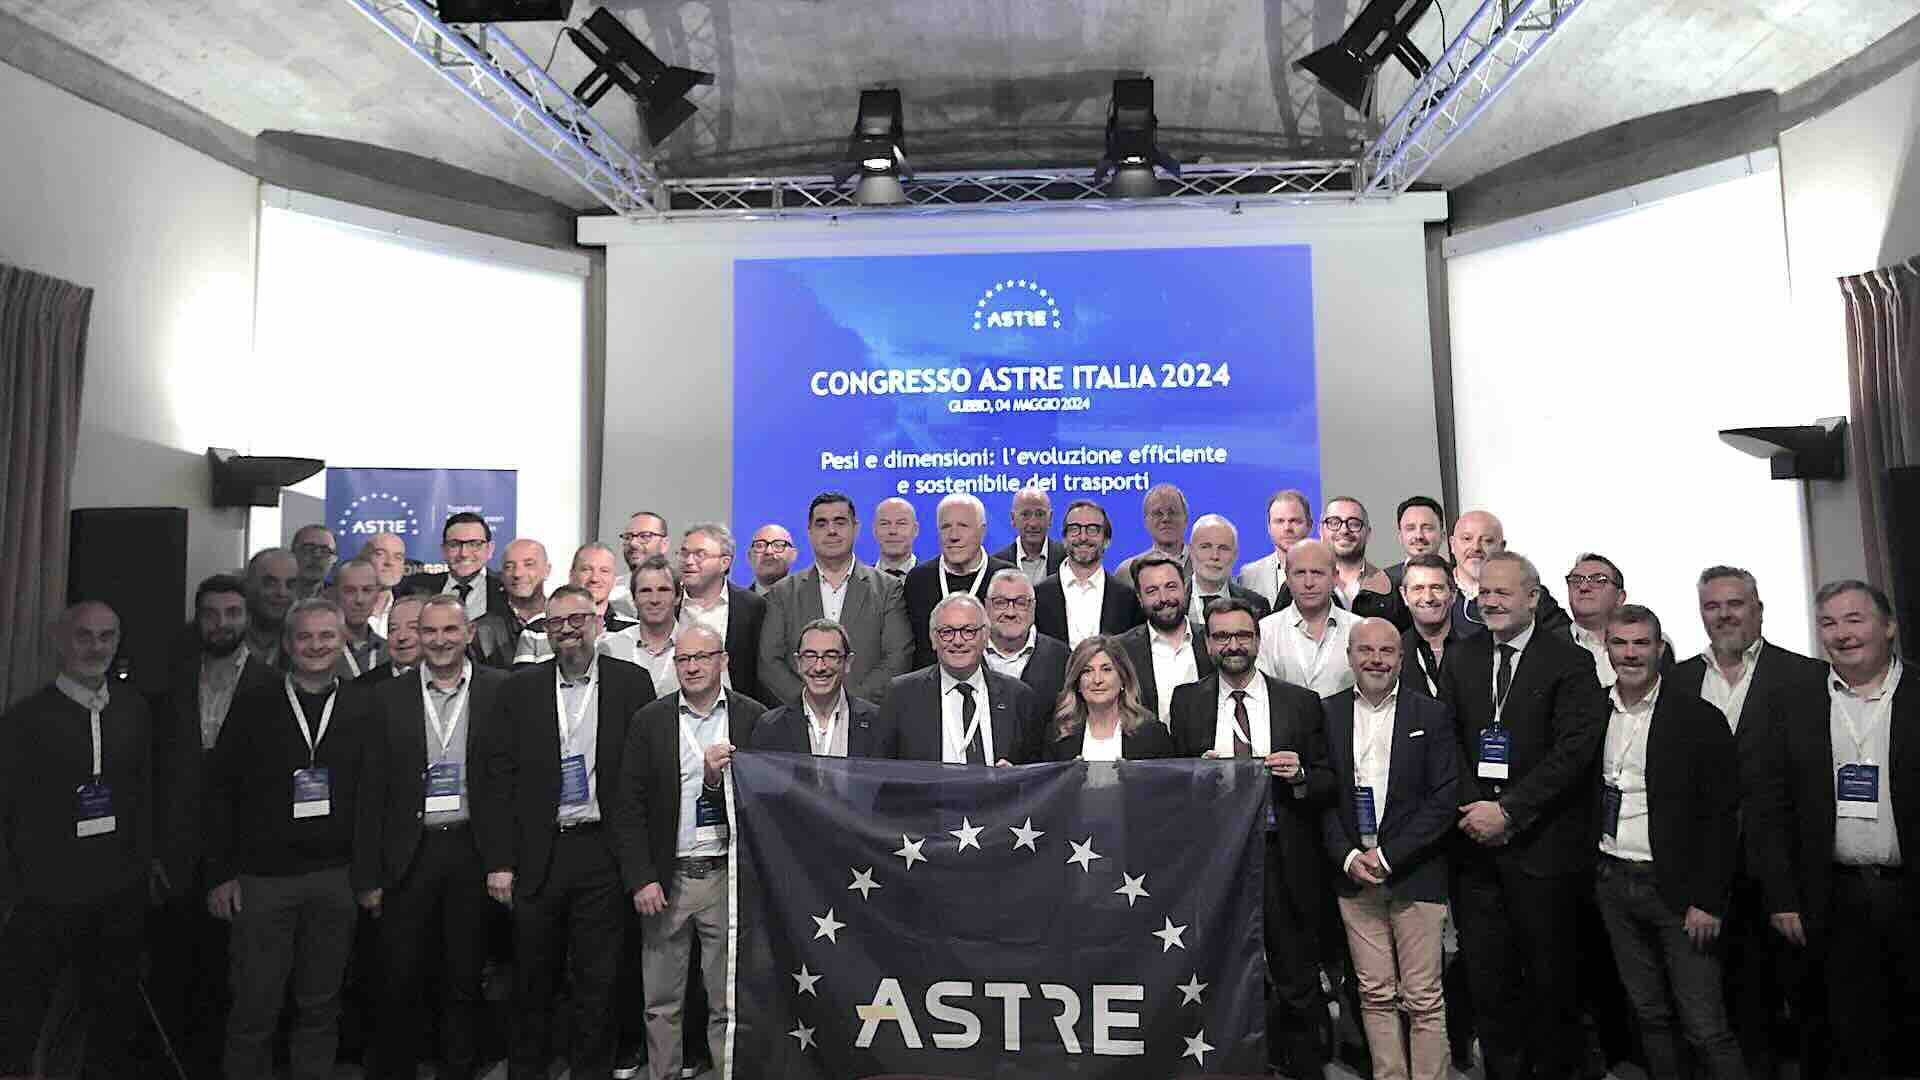 Nuovi pesi e dimensioni al Congresso ASTRE ITALIA 2024